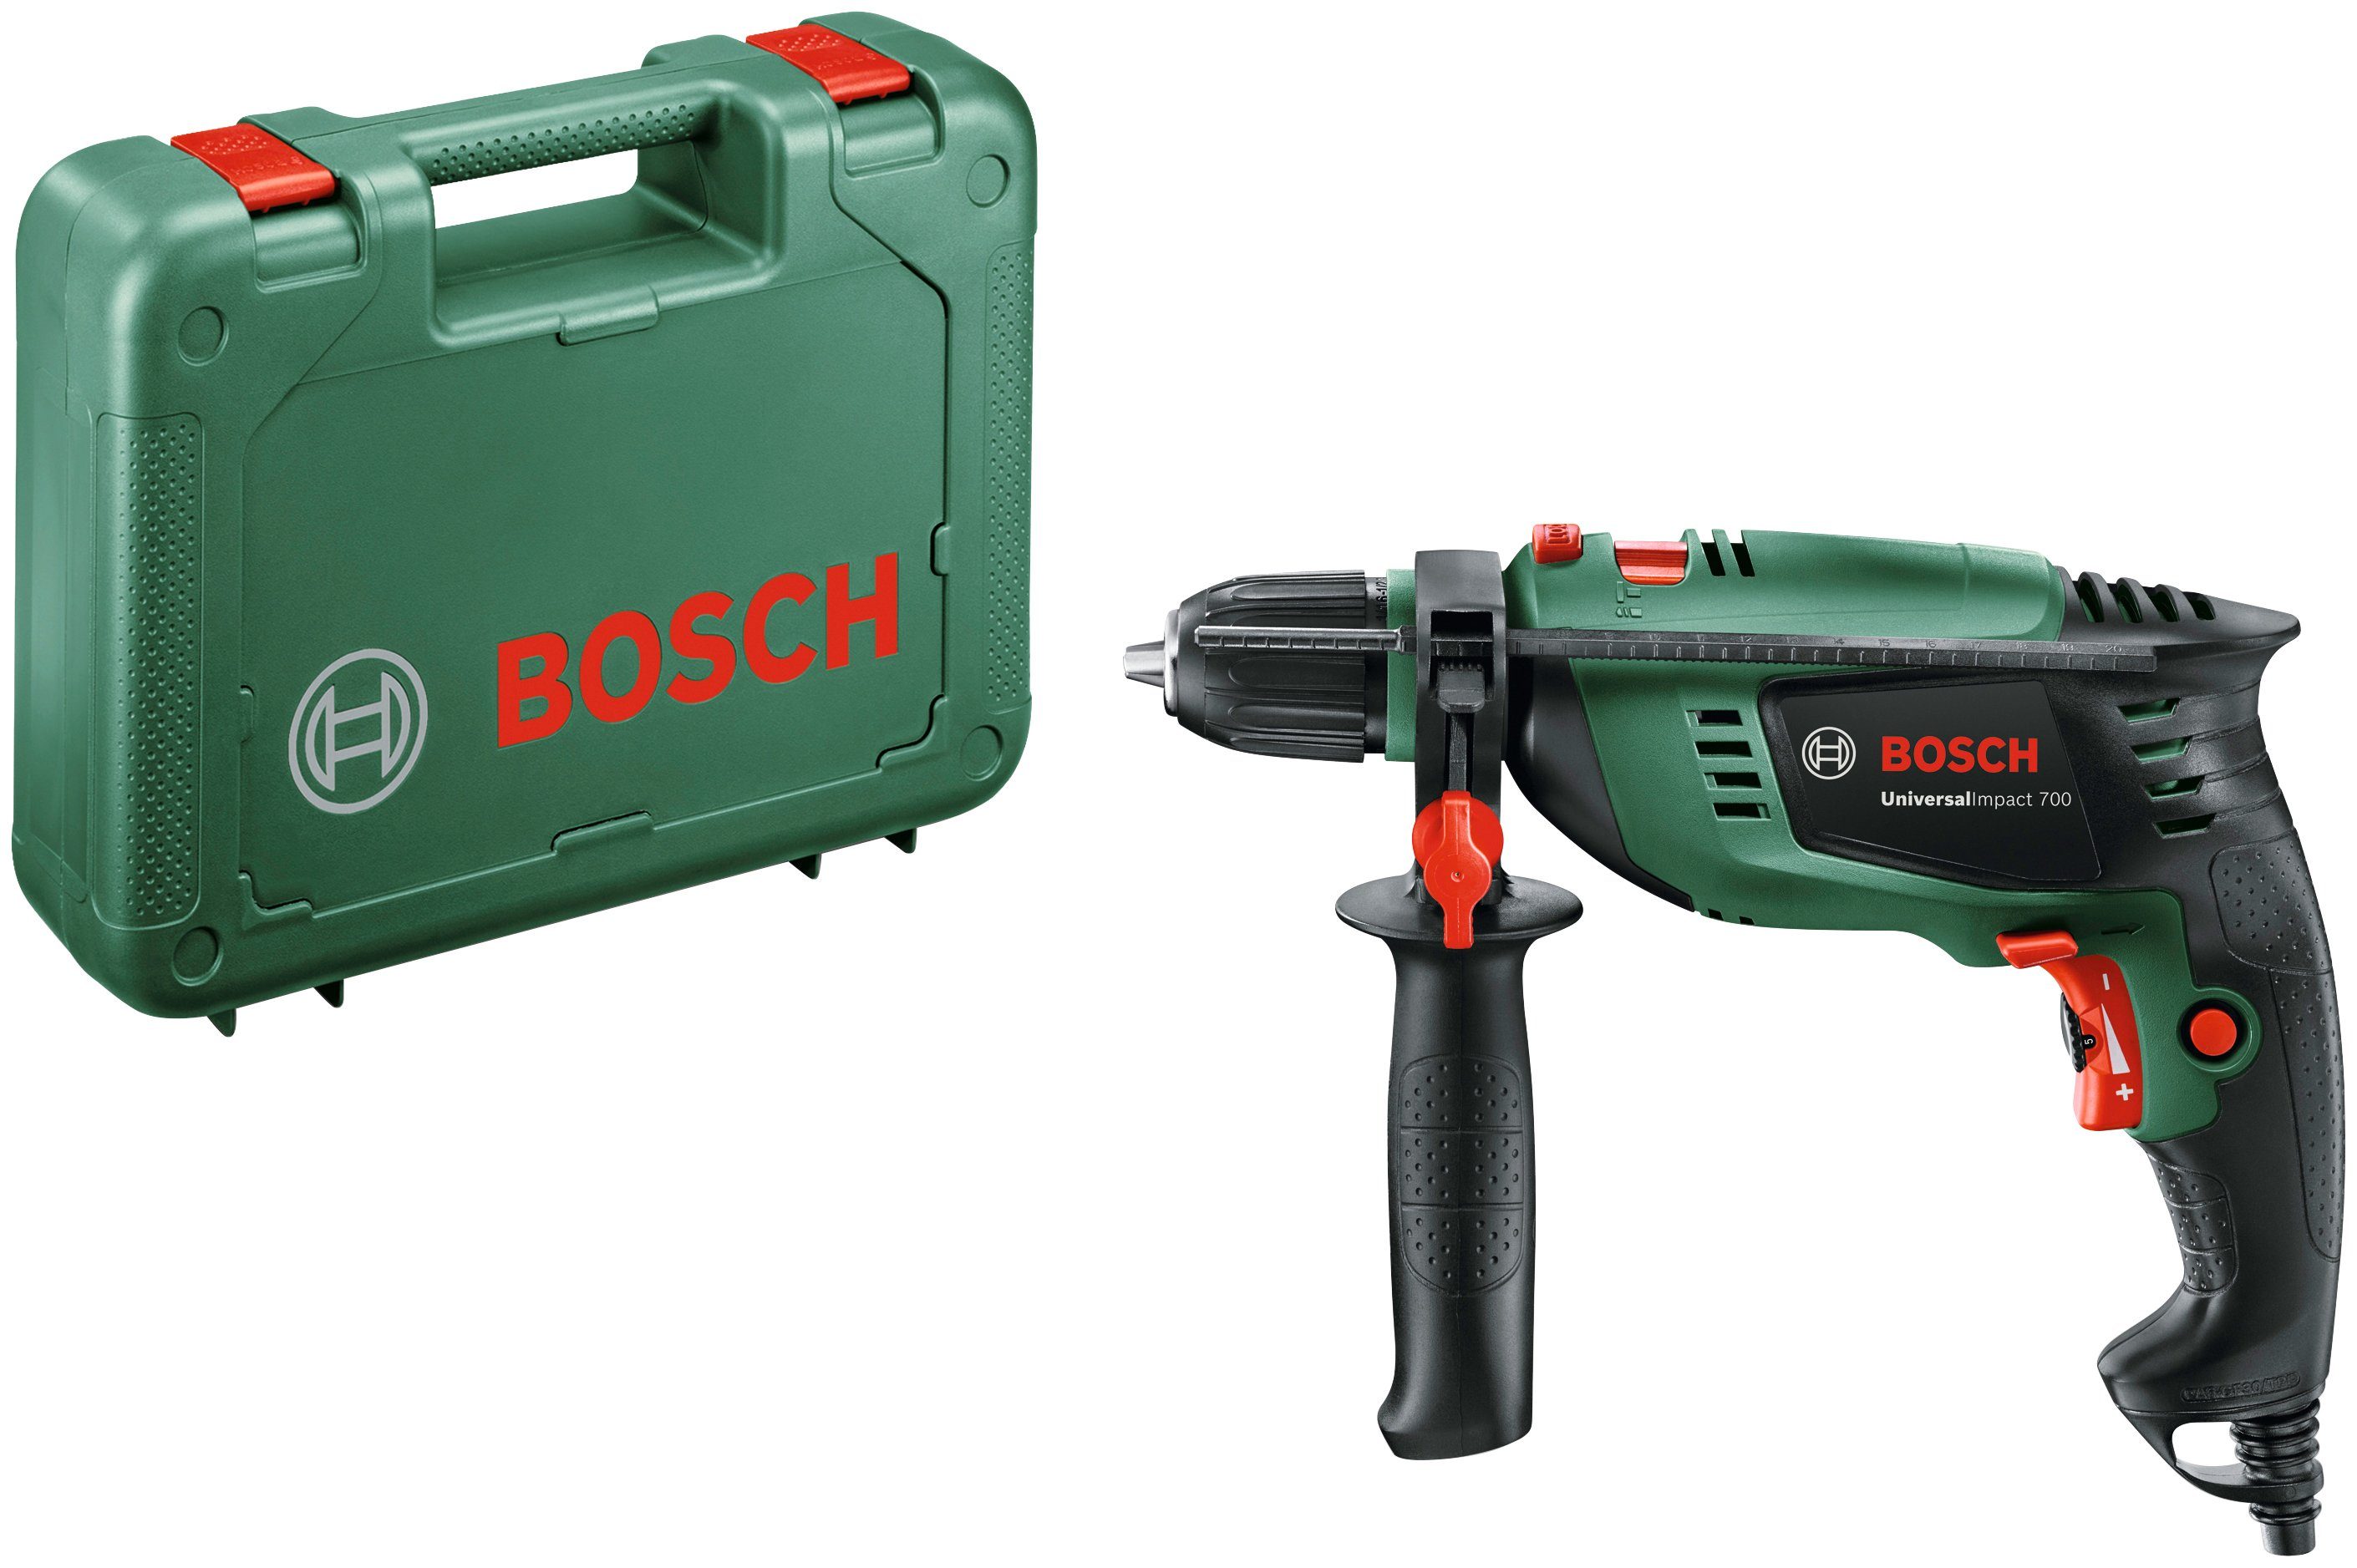 Schlagbohrmaschine 3000 700, & Speed Vorwahl genauen Home Kontrolle Garden UniversalImpact und U/min, der Bosch Bosch max. Bohrdrehzahl zur Preselection